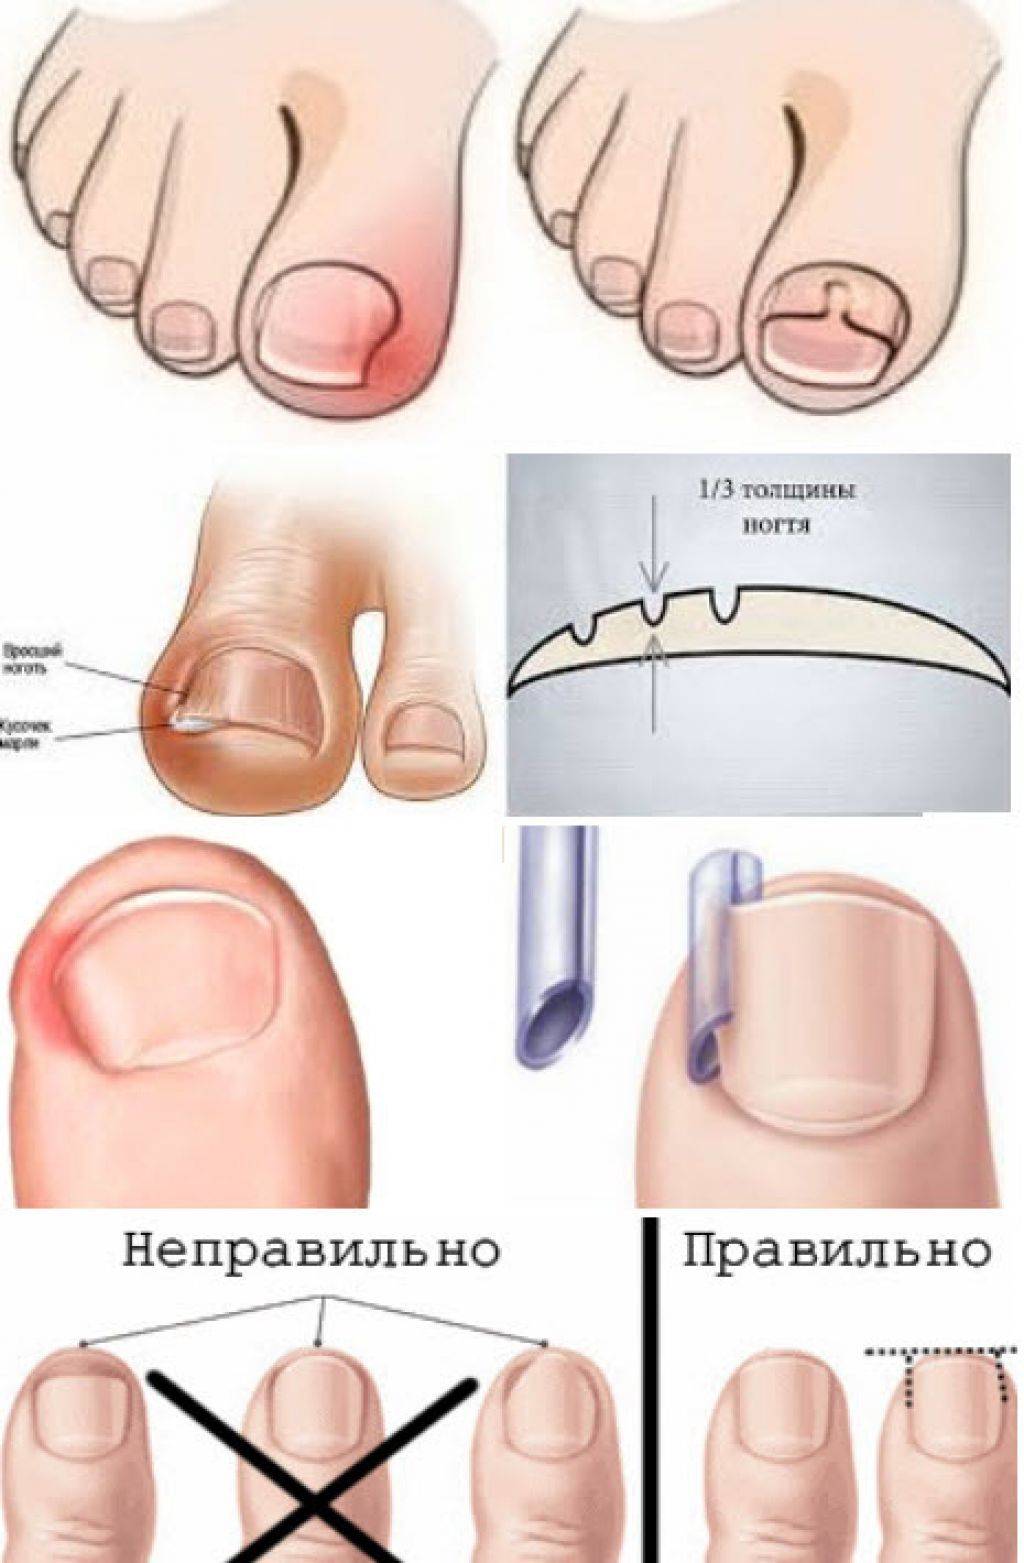 Удаление вросшего ногтя: методы проведения операции | food and health